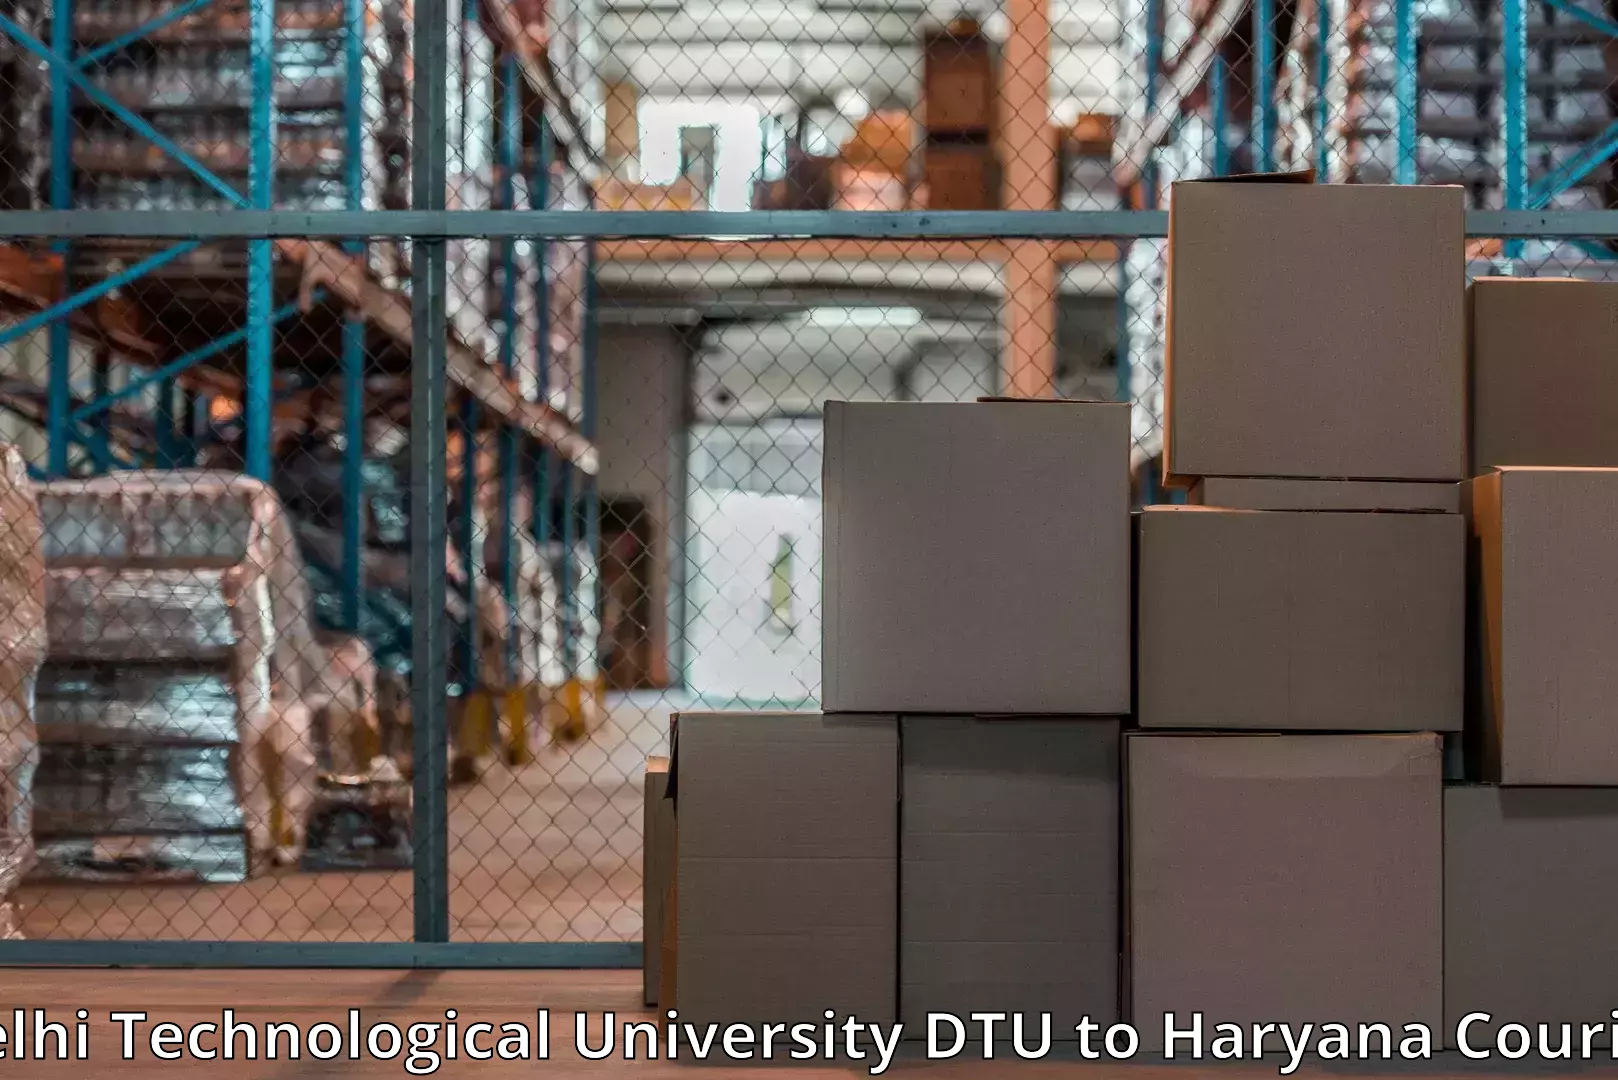 Furniture transport service Delhi Technological University DTU to Assandh